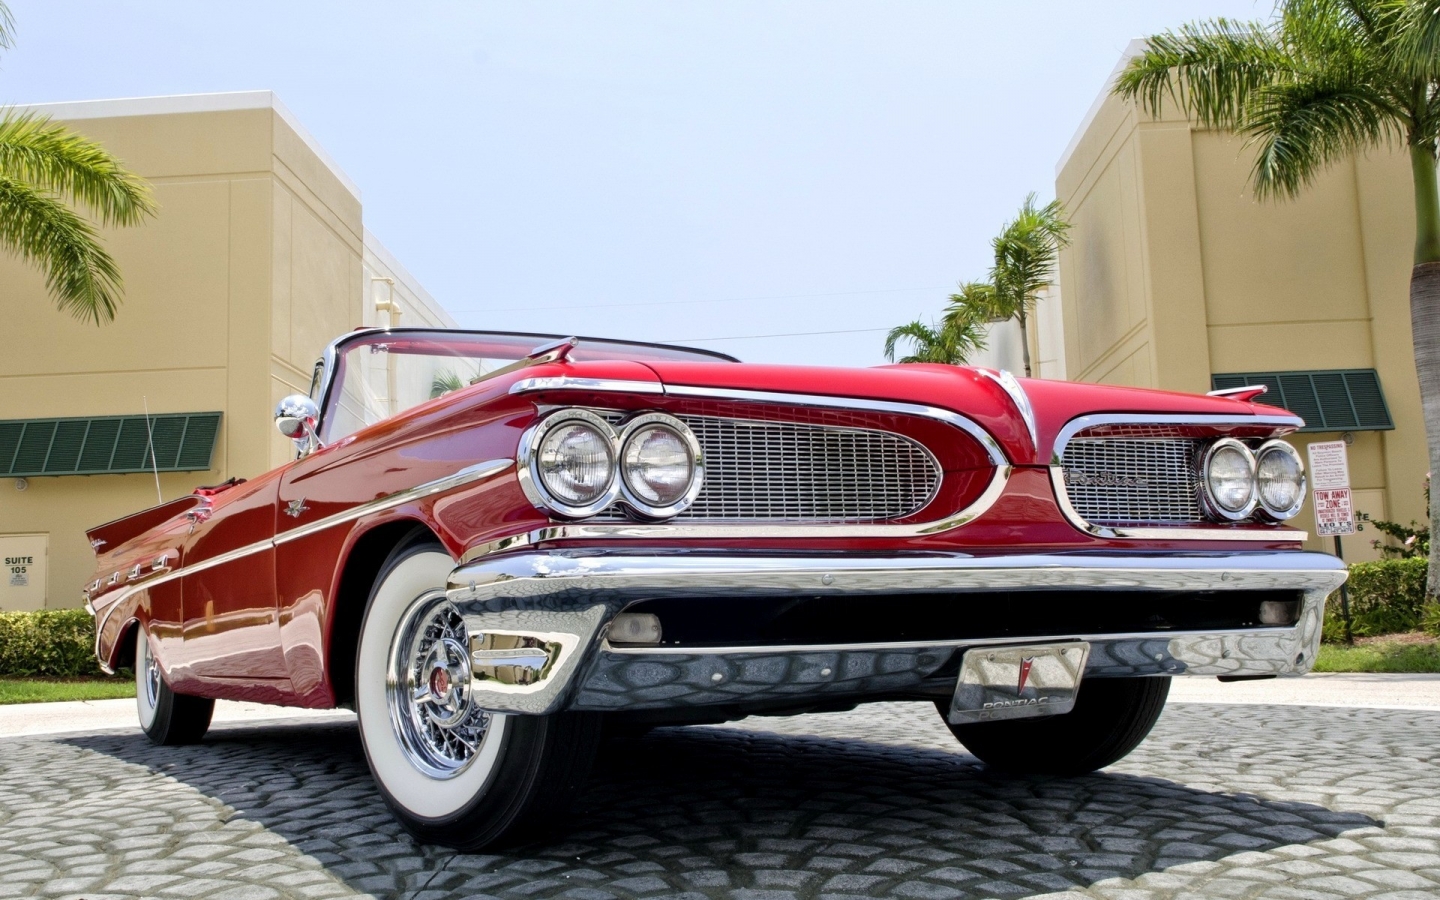 1959 Red Pontiac Cabrio for 1440 x 900 widescreen resolution